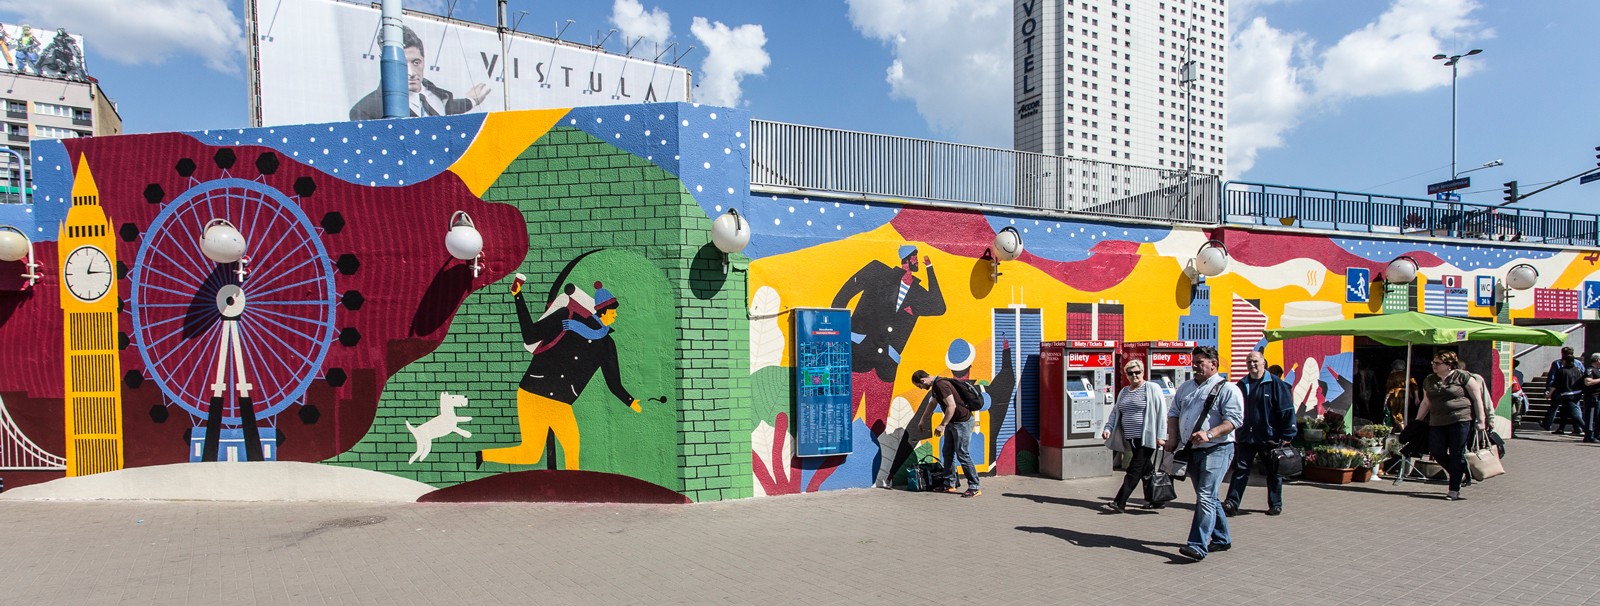 Patelnia w Centrum Warszawy obok metra centrum z namalowanym ręcznie projektem ilustratorki Olki Osadzińskiej | kampania murali dla Costa Coffee - Polscy ilustratorzy | Portfolio